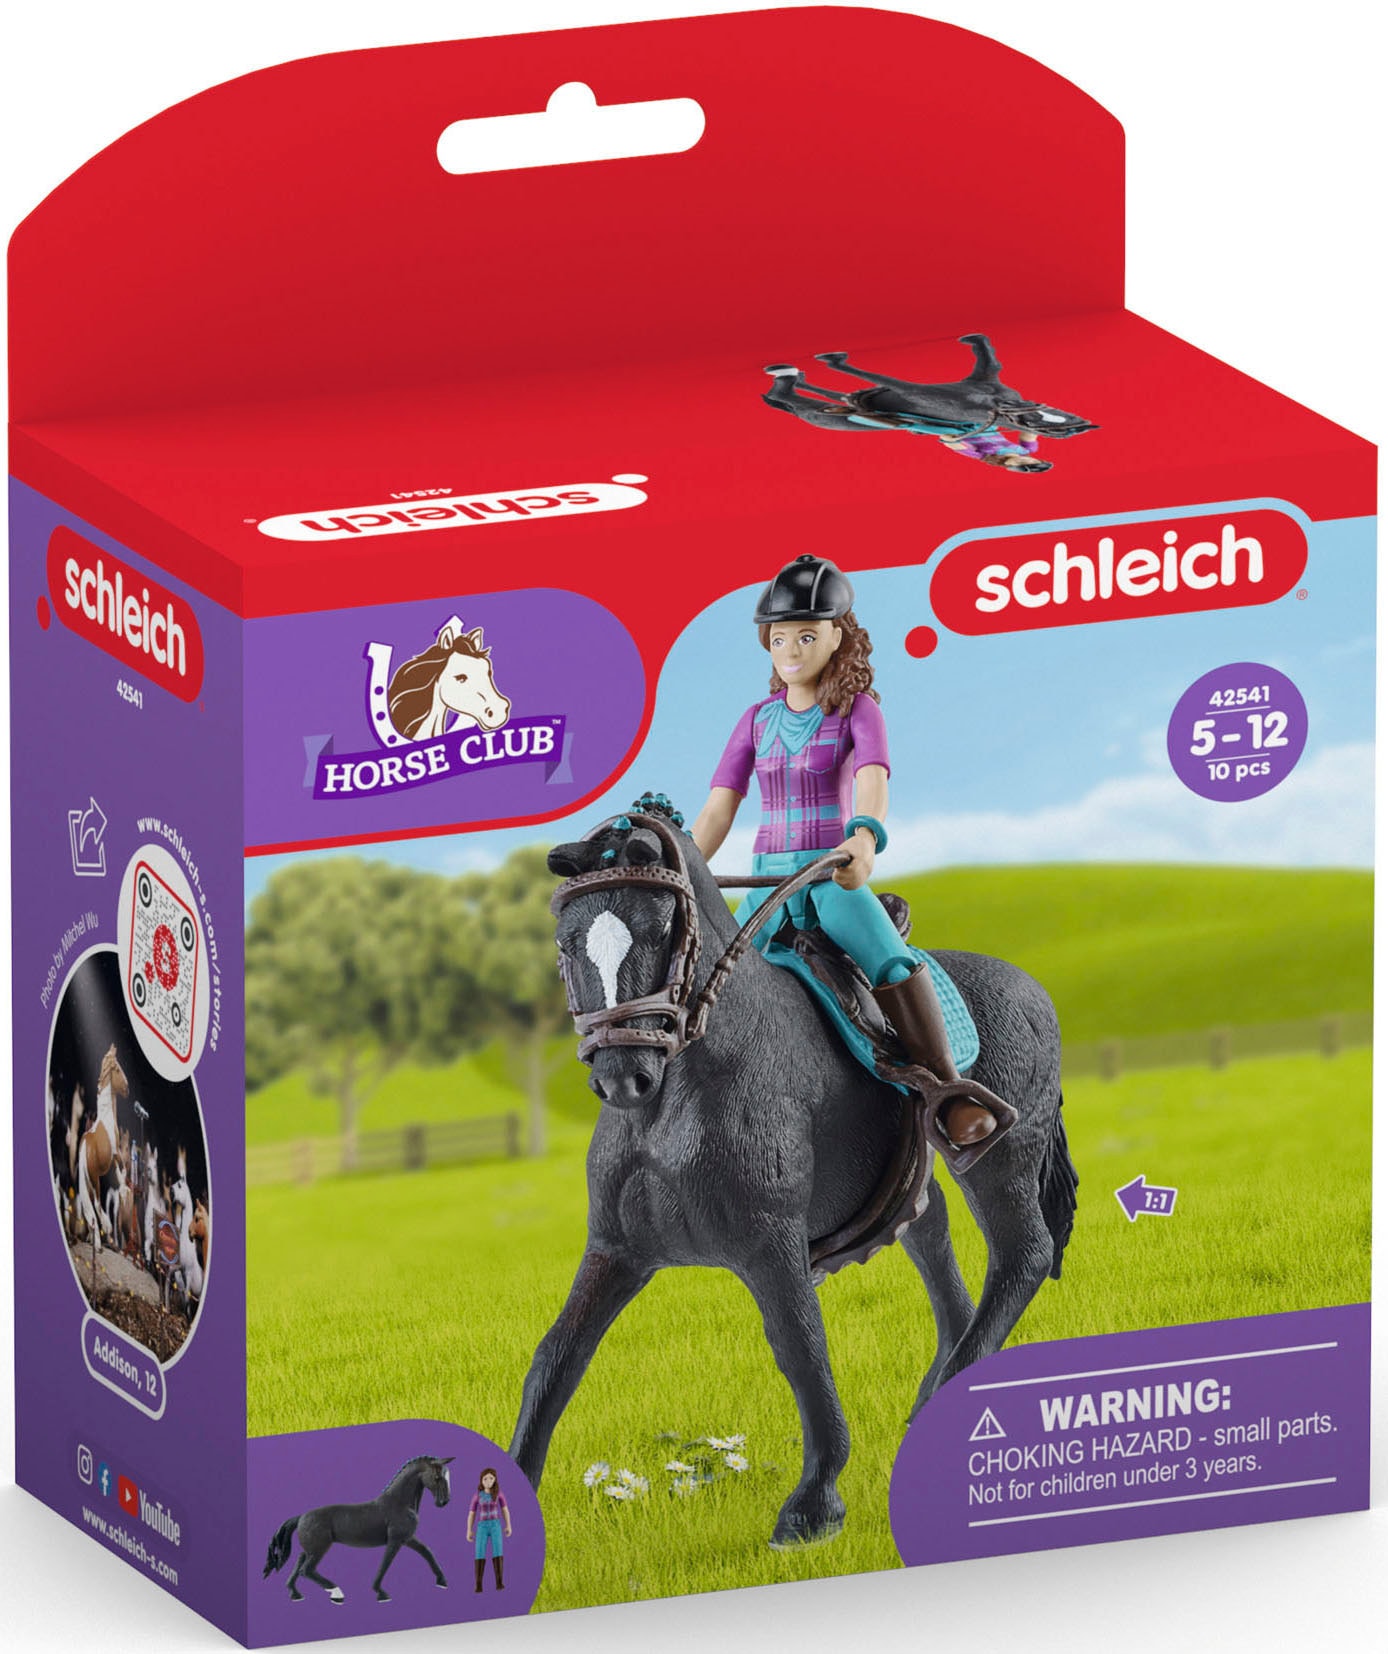 Schleich® Spielfigur »HORSE CLUB, Lisa und Storm (42541)«